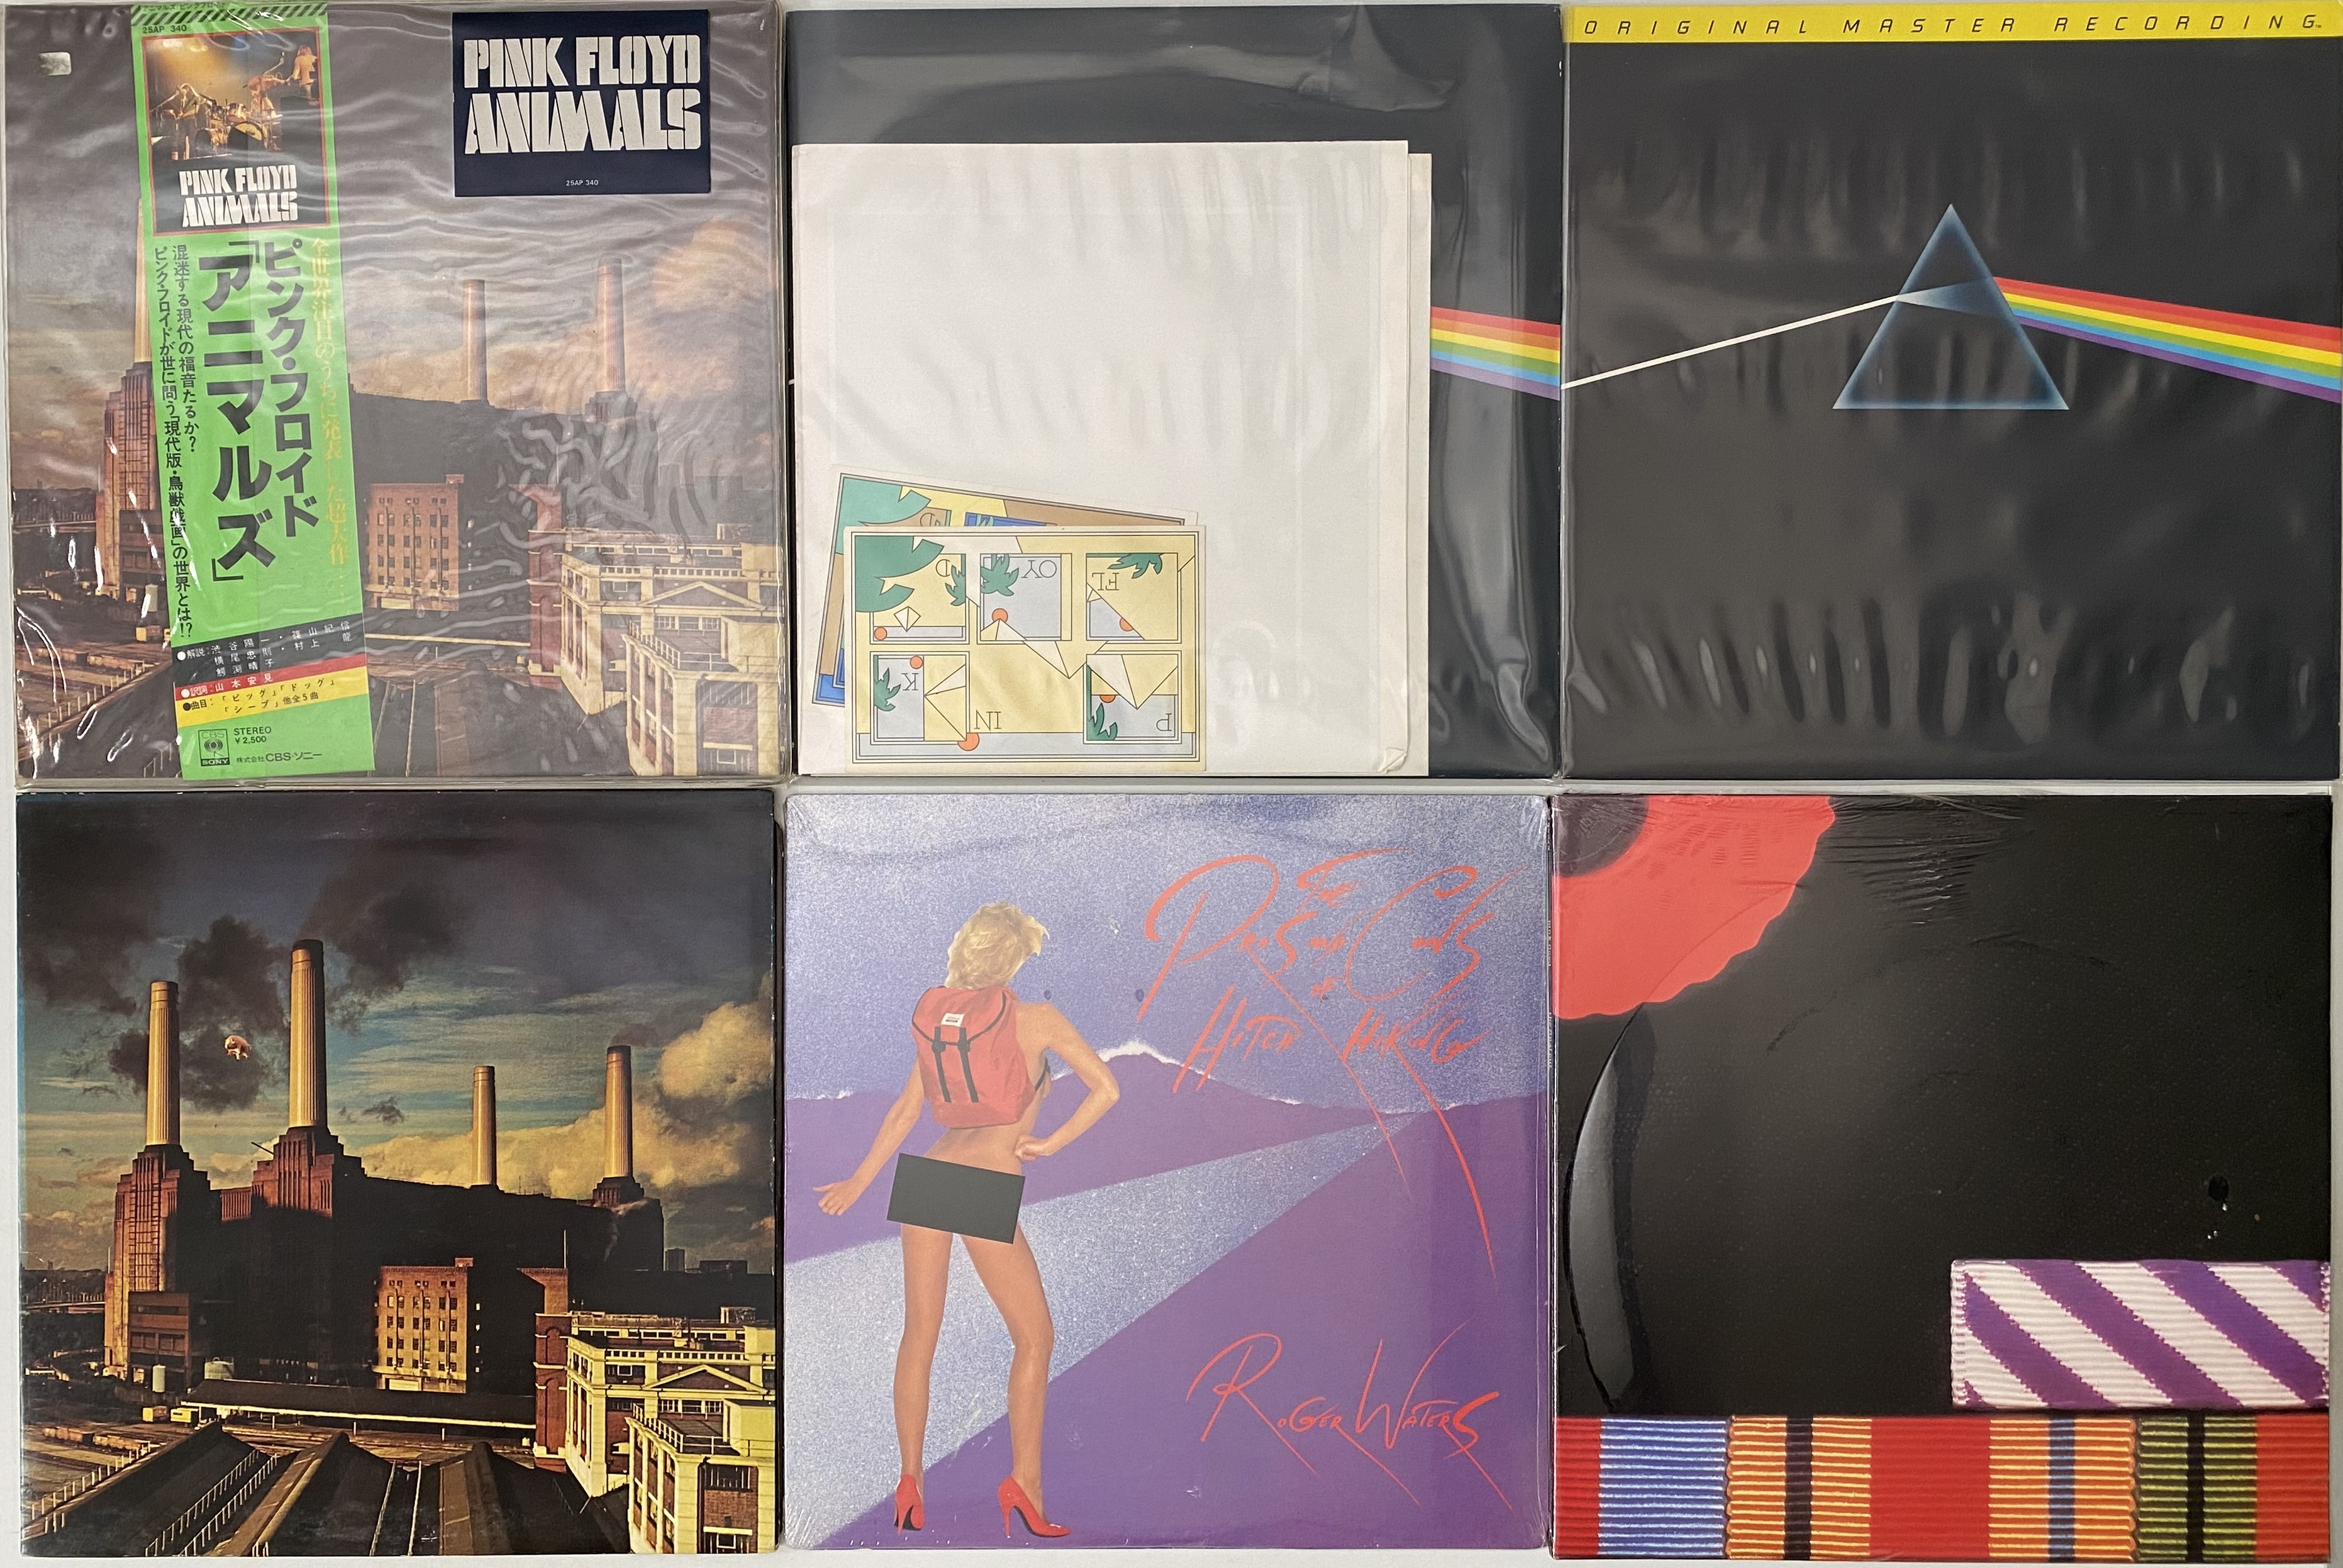  Pink Floyd Echoes Vinilo Vinyl 4 Discos . - auction details